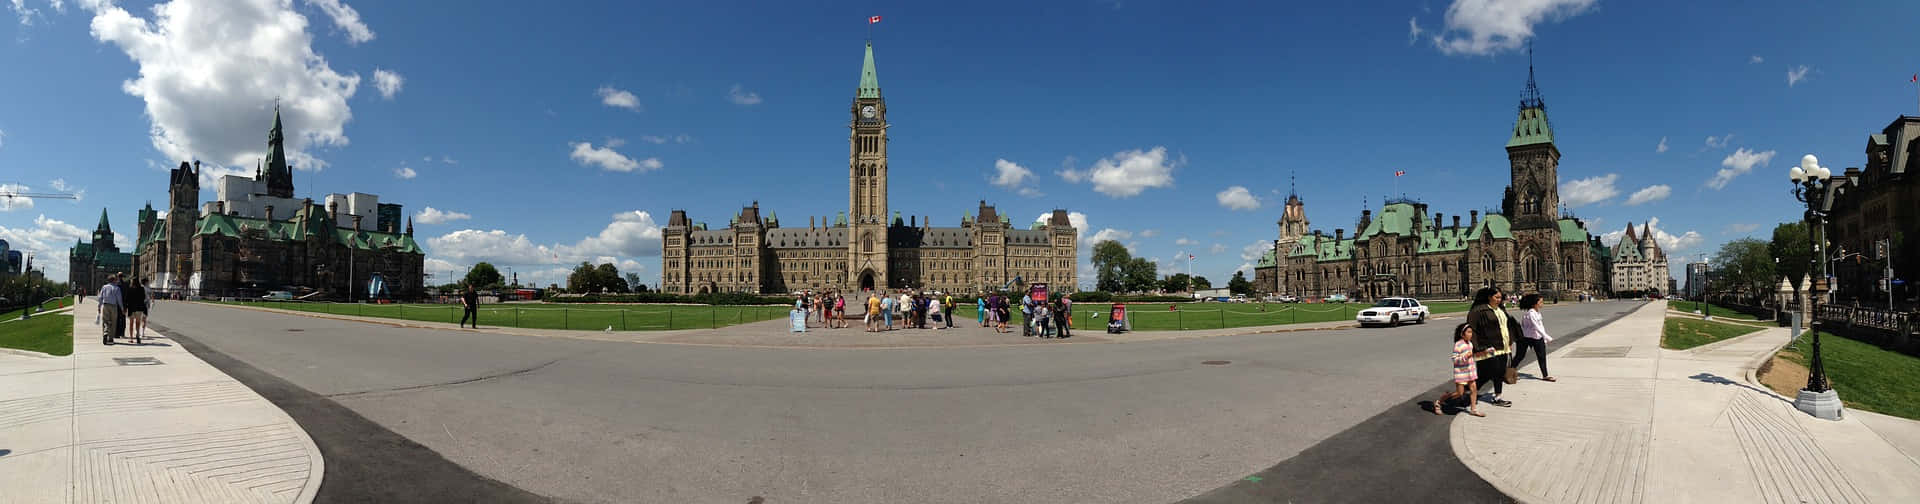 Parliamenthill Kanada Panoramabild